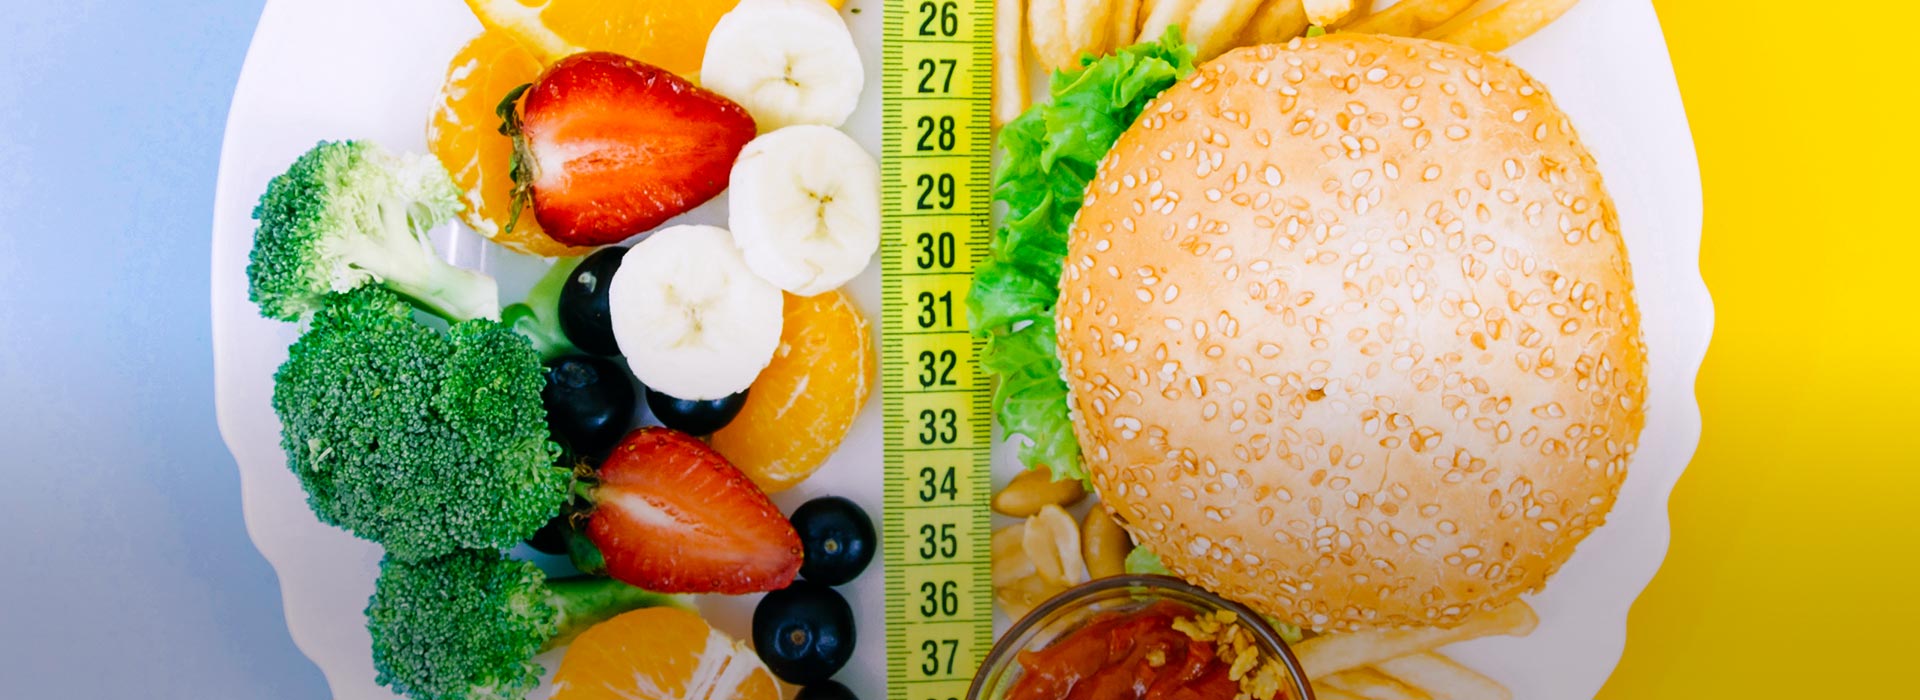 Meta 2020: Tener una alimentación saludable y así lograr un peso balanceado